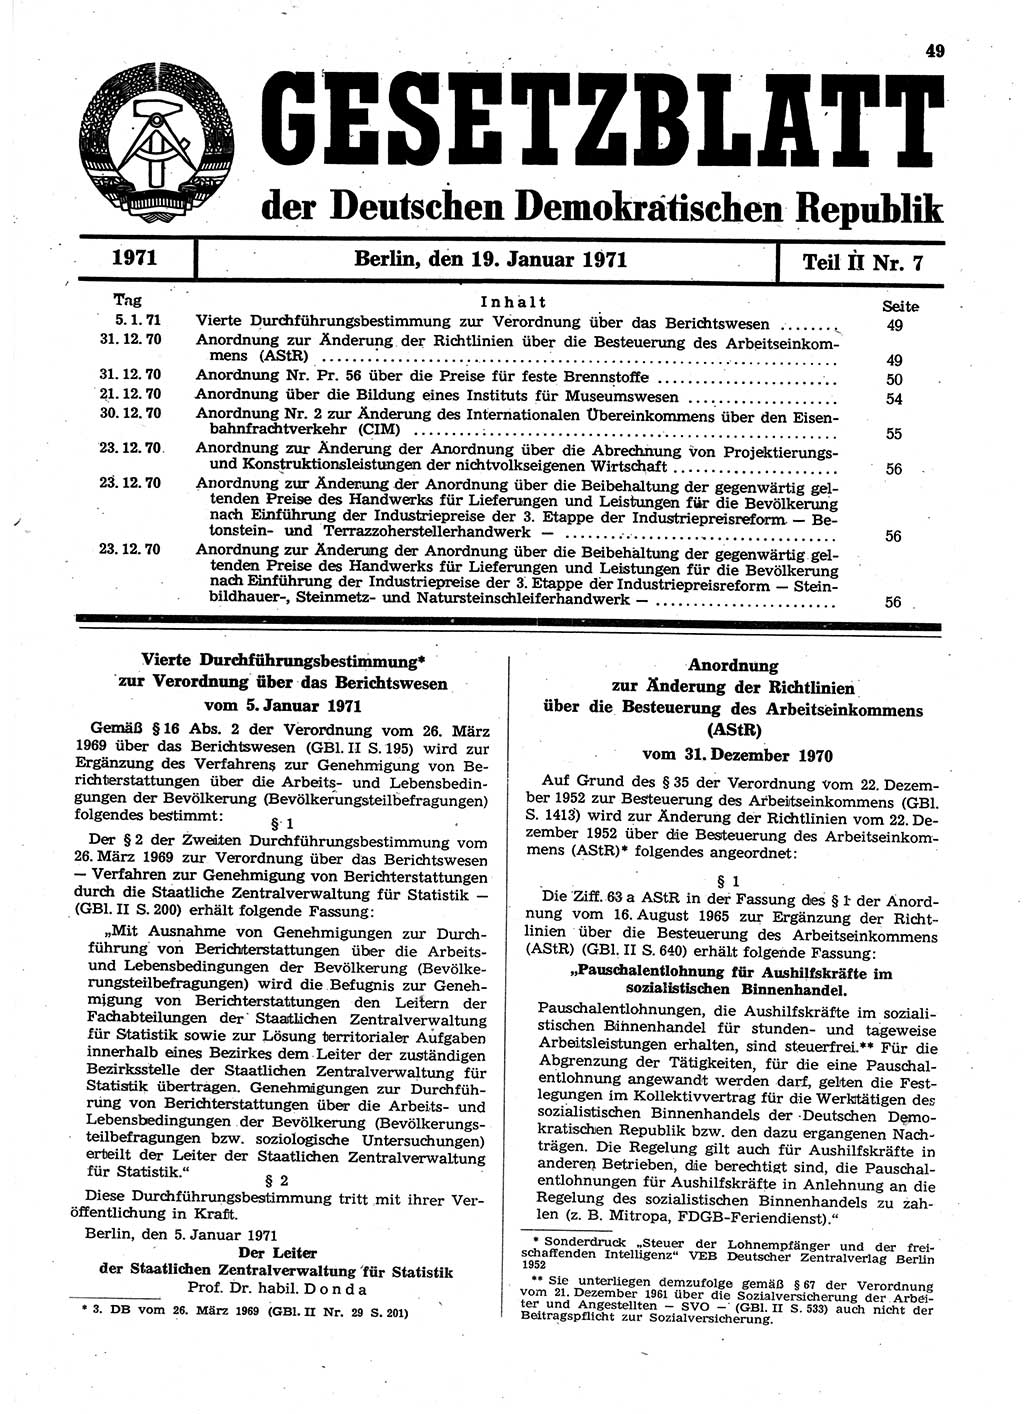 Gesetzblatt (GBl.) der Deutschen Demokratischen Republik (DDR) Teil ⅠⅠ 1971, Seite 49 (GBl. DDR ⅠⅠ 1971, S. 49)